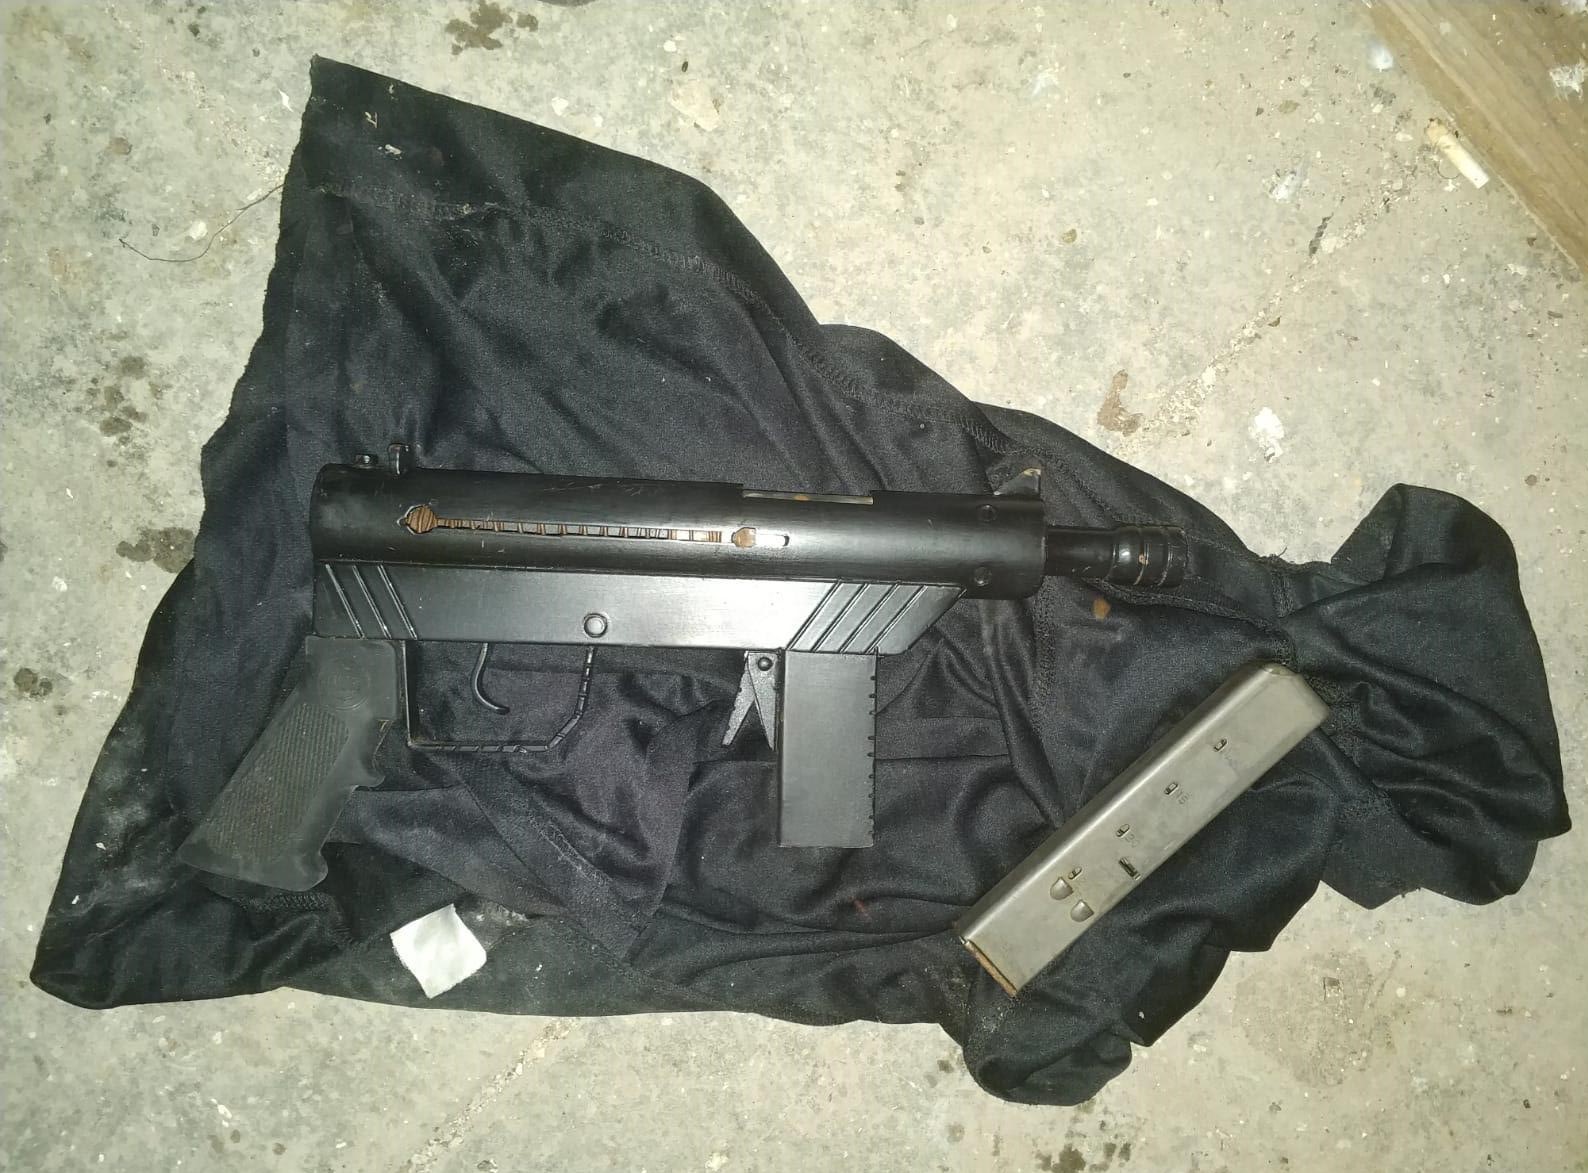 الشرطة: العثور على قطعة سلاح من نوع كارل جوستاف واعتقال مشتبه بيافا